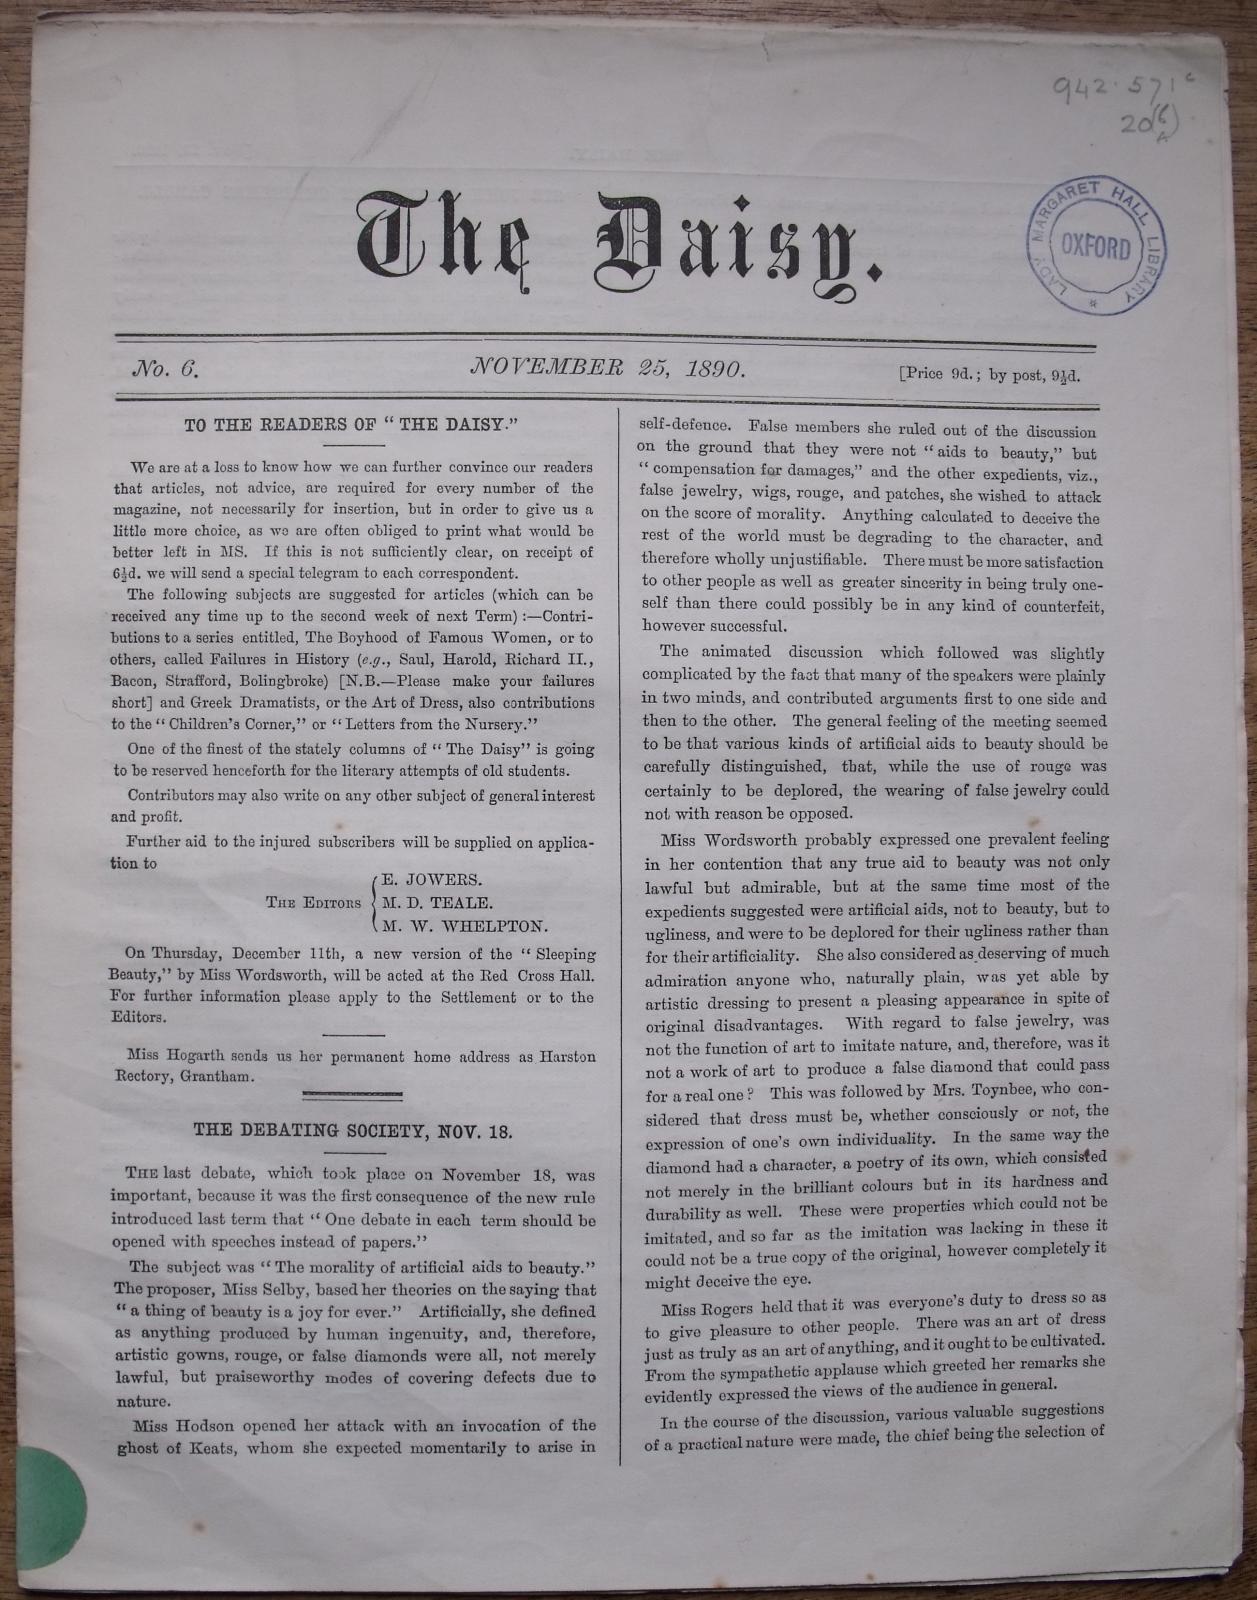 The Daisy, an early LMH publication